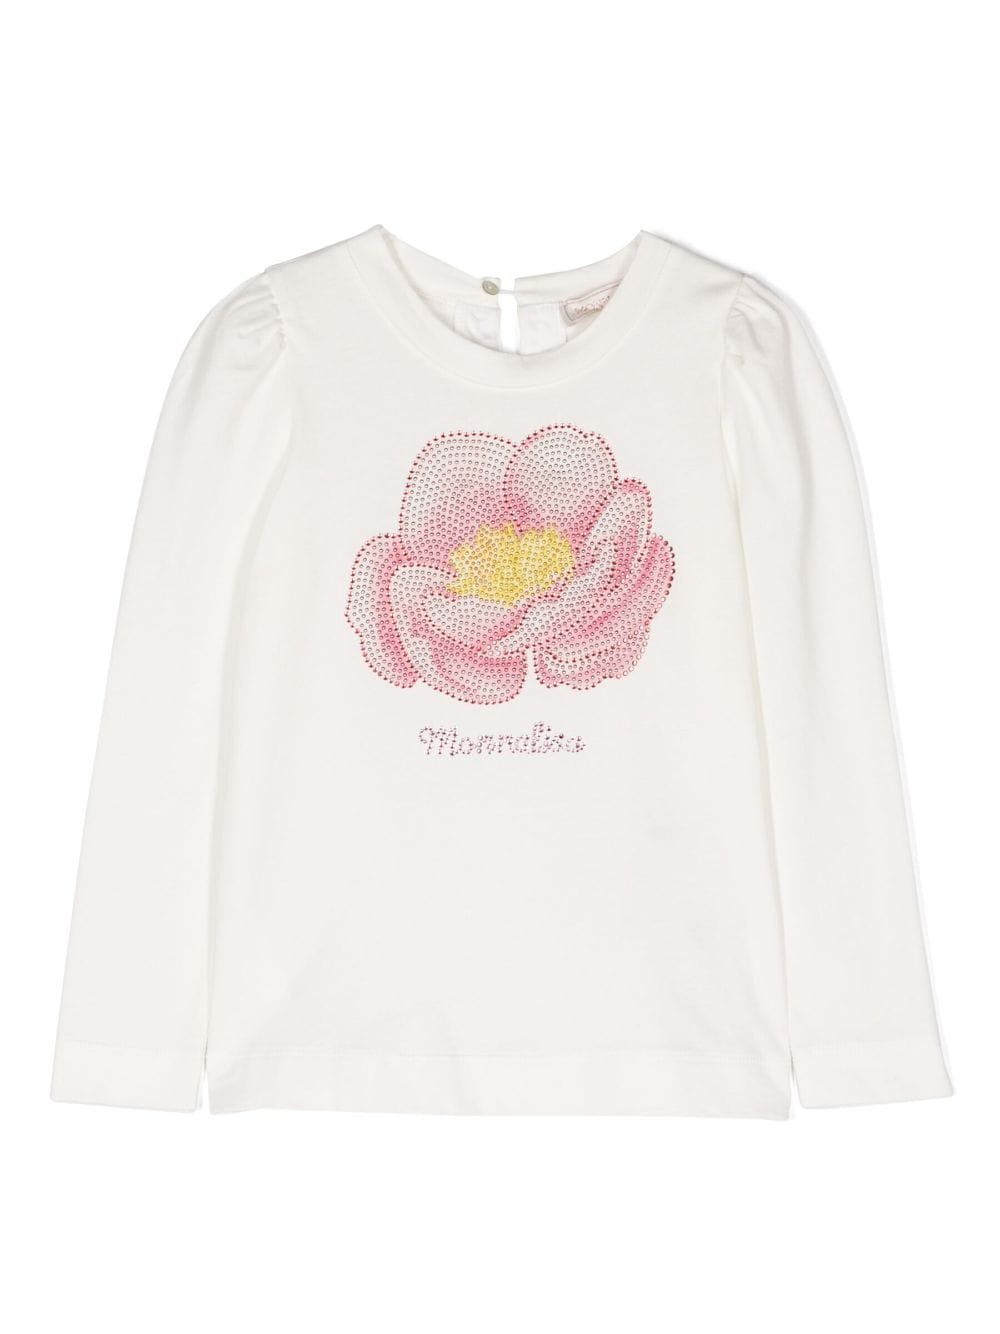 T-shirt con fiore in cristalli - Rubino Kids